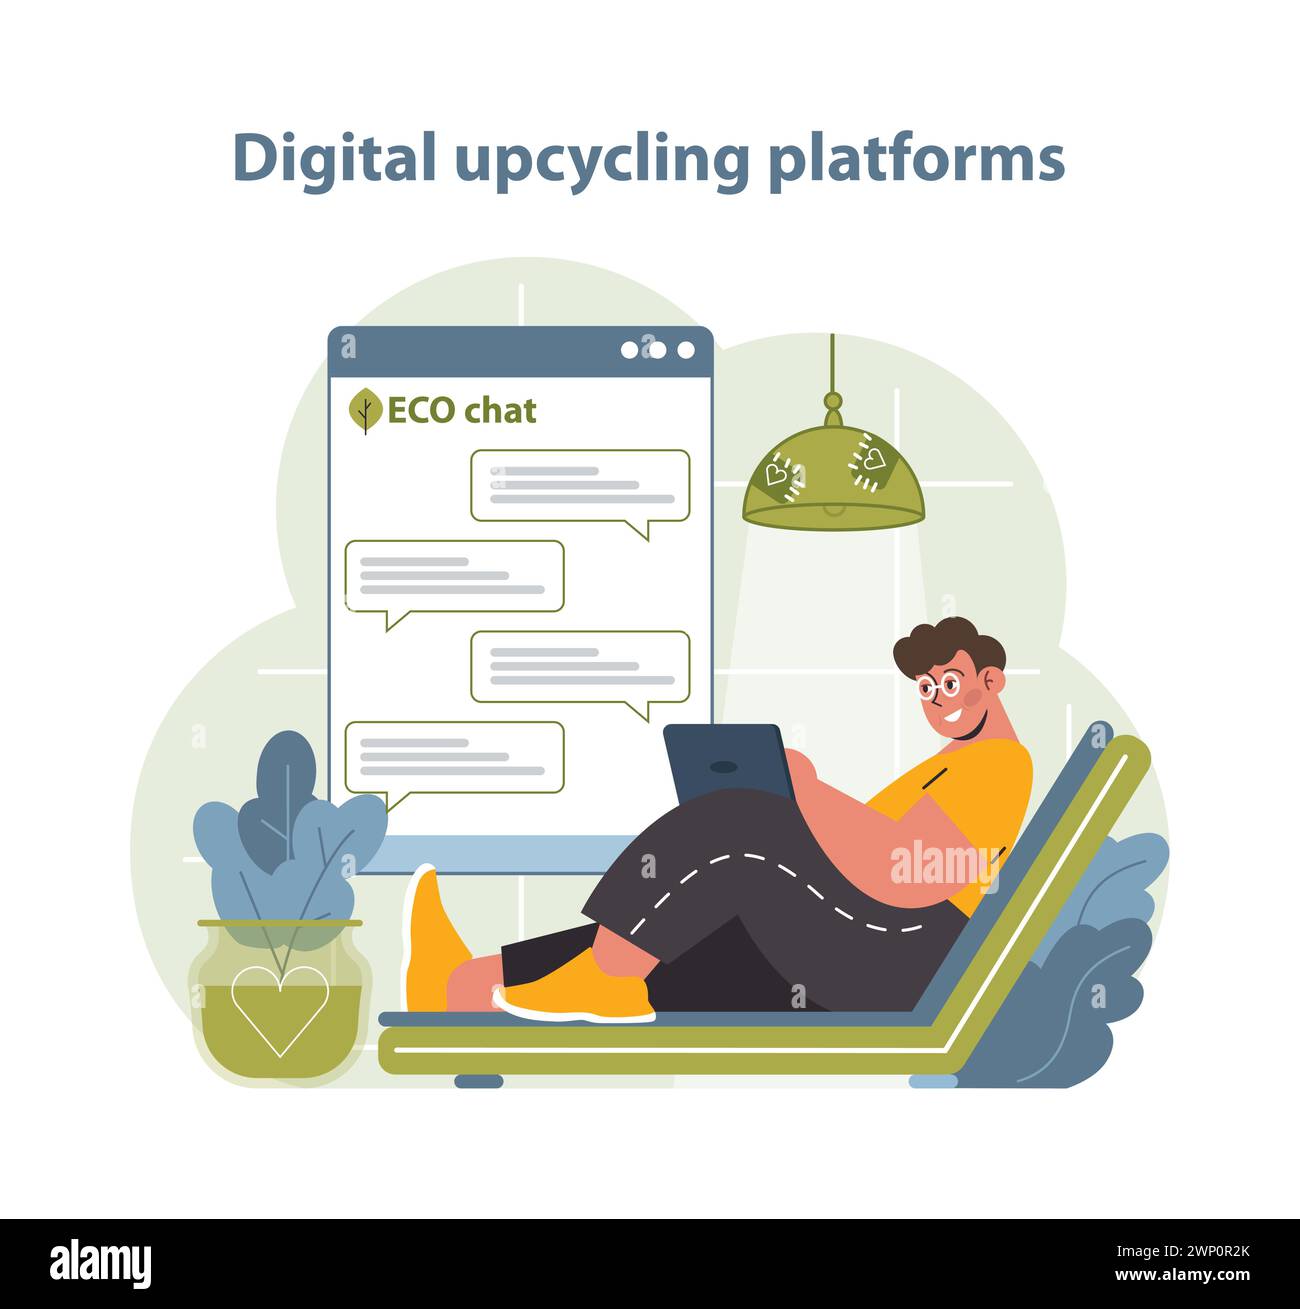 Abbildung: Digitale Upcycling-Plattformen. Eine Person interagiert bequem in einer Online-Upcycling-Community und zeigt die Schnittstelle von Technologie und Umweltschutz. Stock Vektor